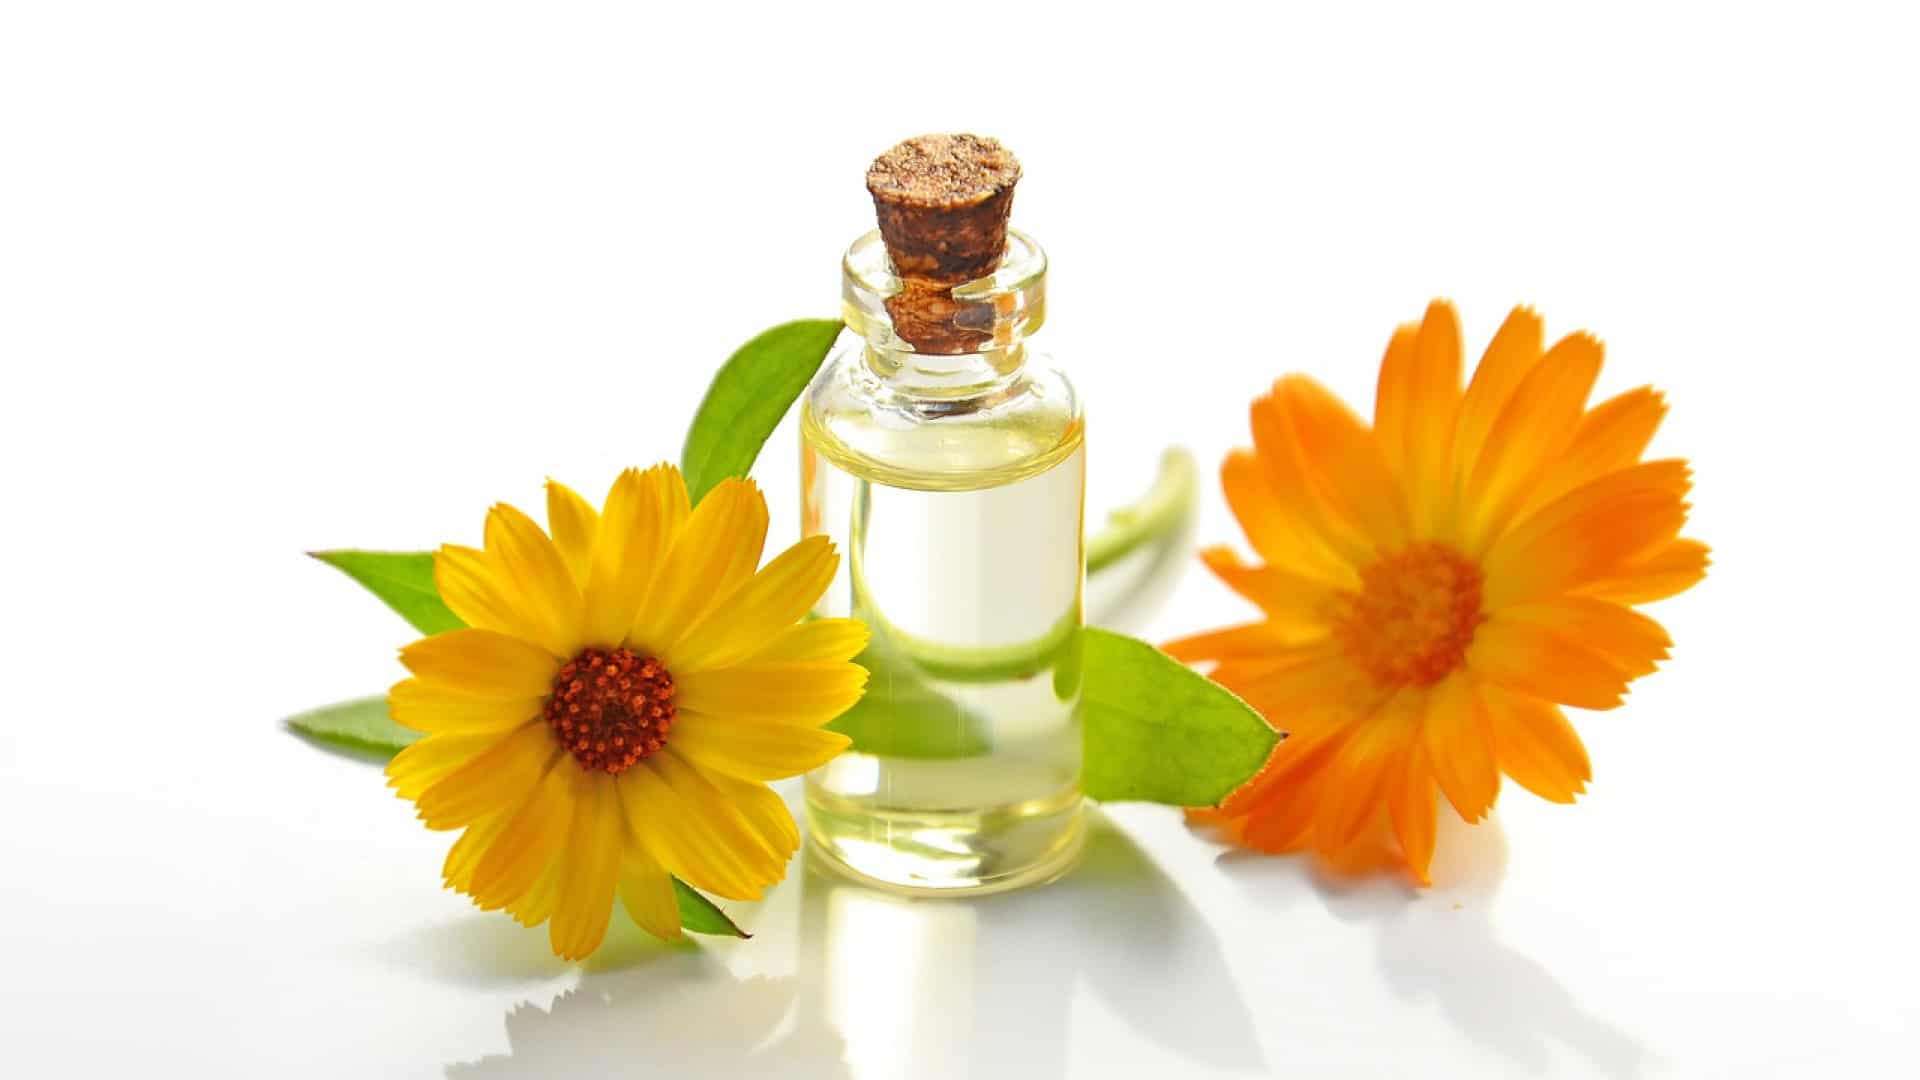 Une petite bouteille en verre contenant de l'huile essentielle pour les soins de la peau, flanquée de deux fleurs jaunes et orange vifs sur fond blanc.